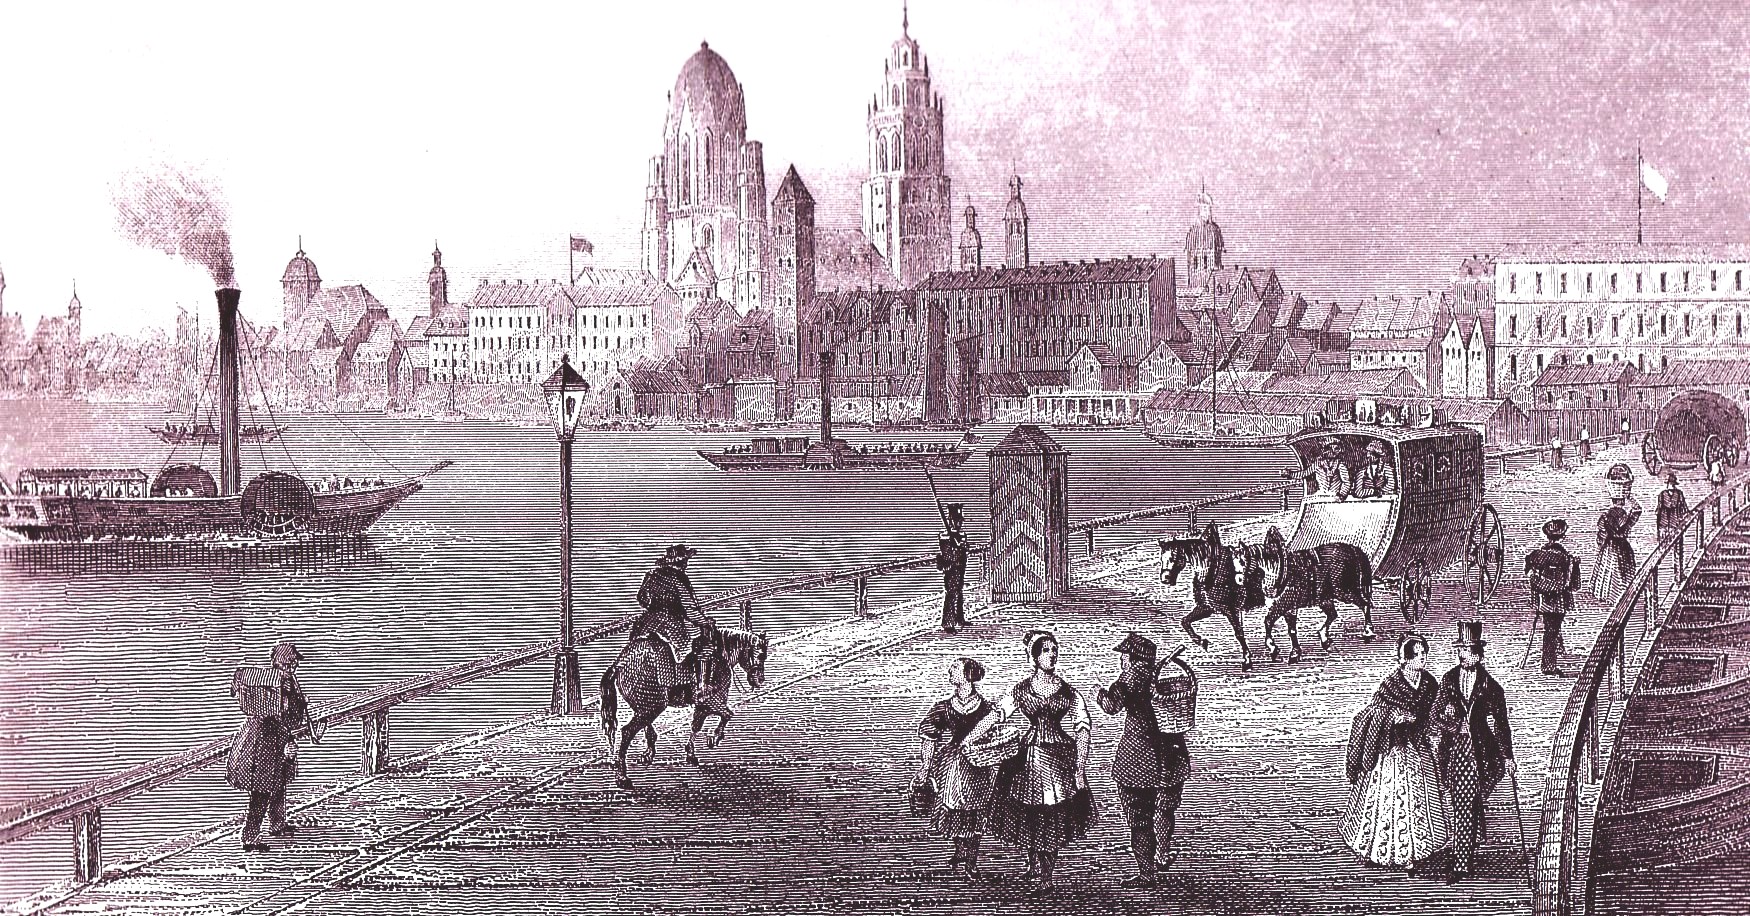 Gemischter Verkehr über eine Pontonbrücke nach Mainz, um 1845
(Quelle: Kalenderblatt, Sammlung Ruppmann)